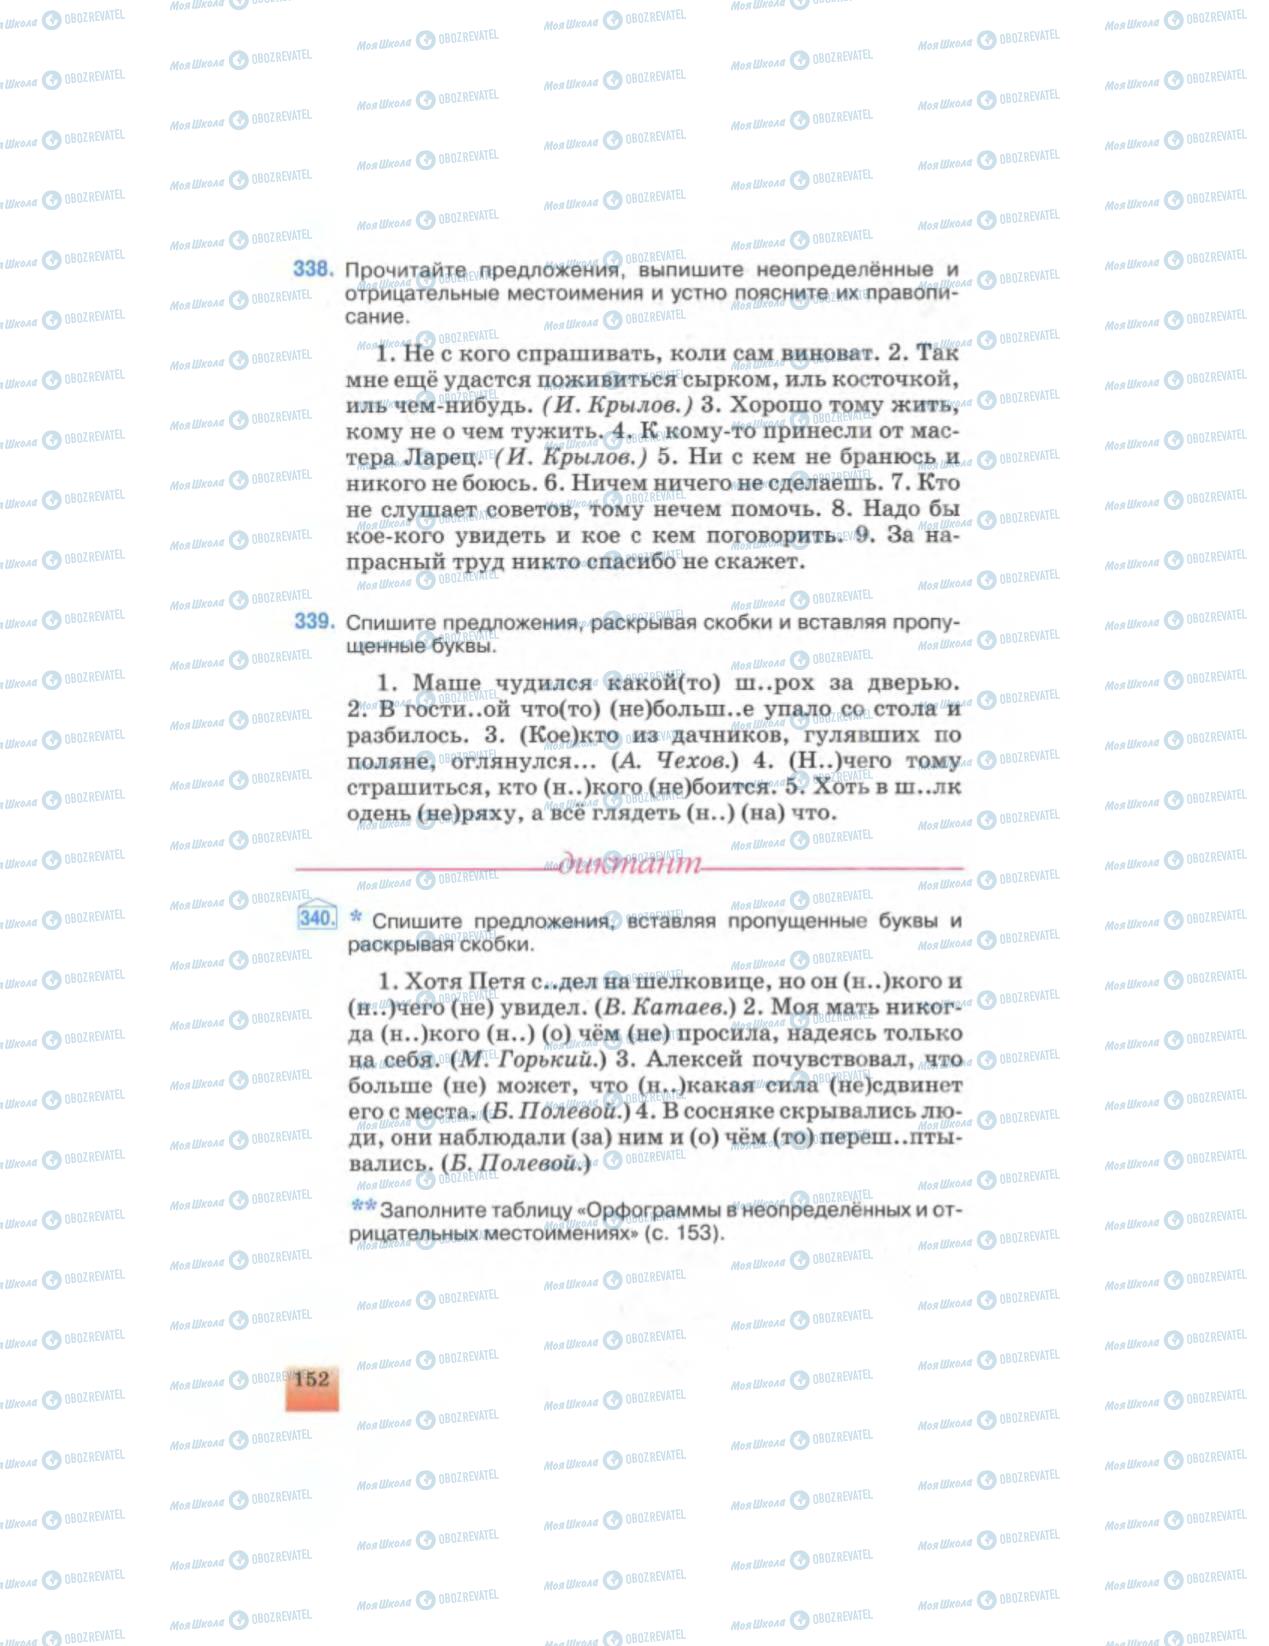 Учебники Русский язык 6 класс страница 152